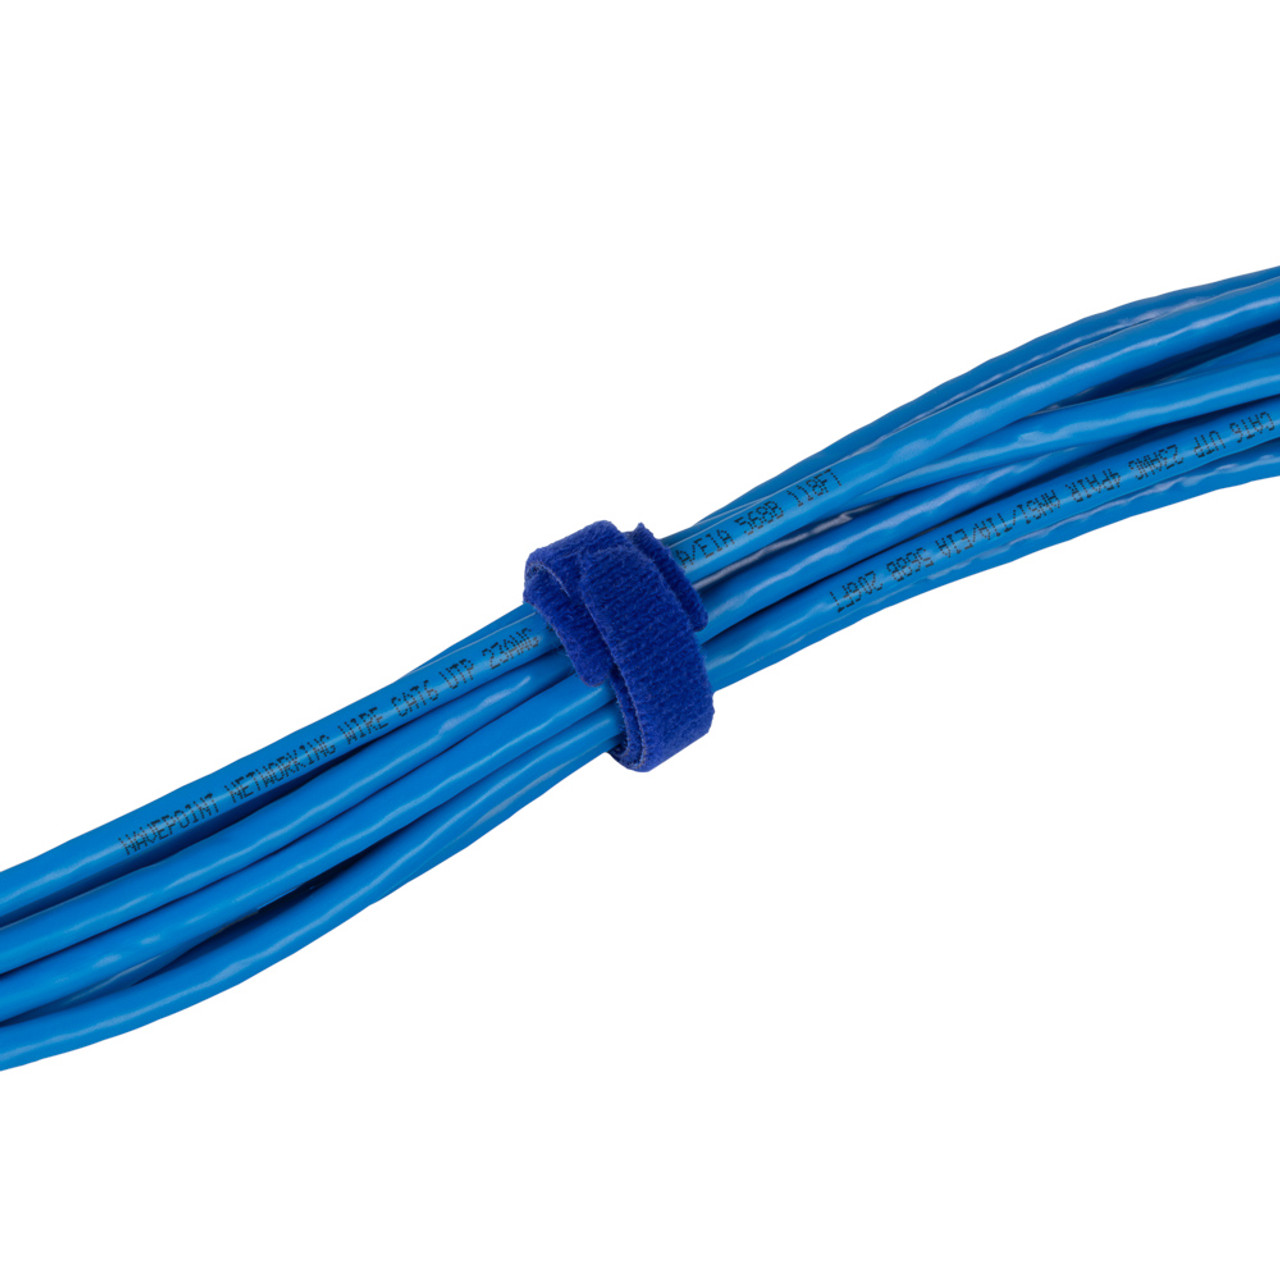 NavePoint 8 Inch Hook and Loop Cable Ties Blue - 25 Pack: Hook and Loop Ties